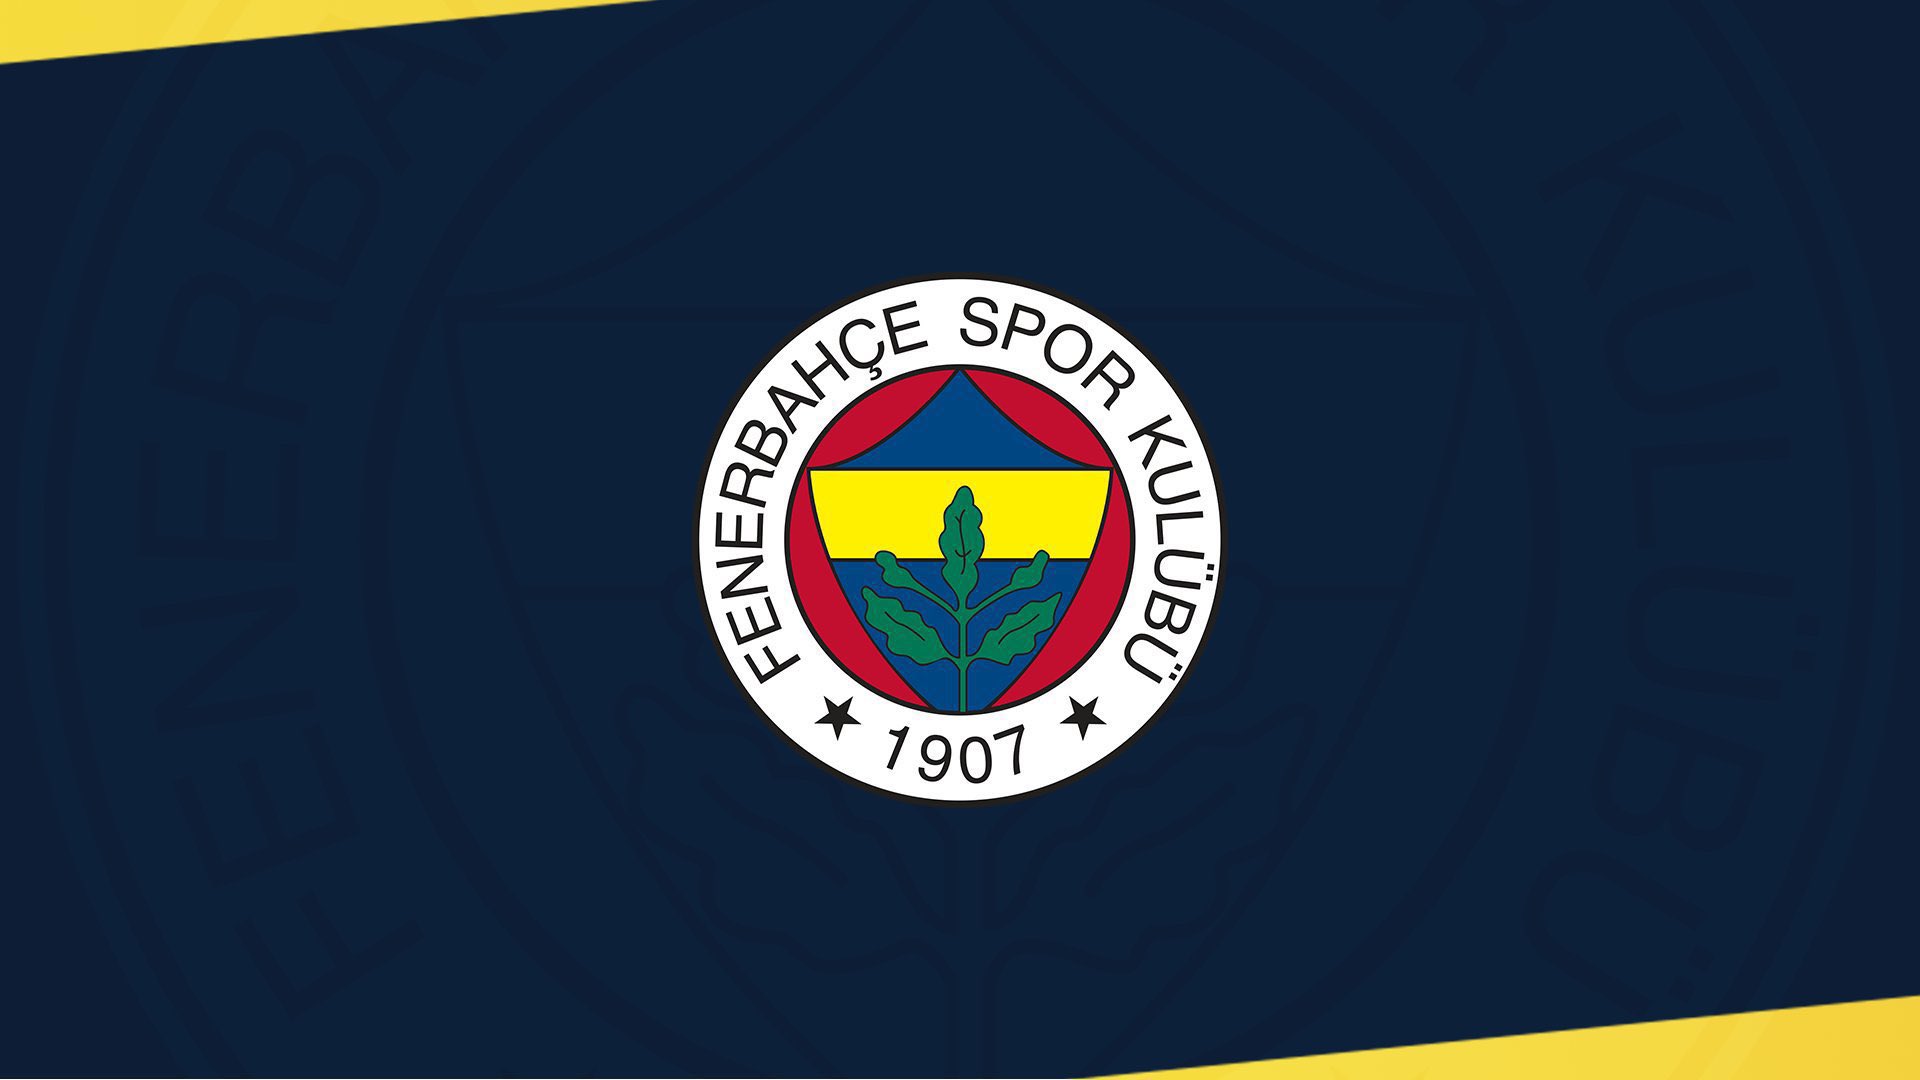 Fenerbahçe’de Volkan Ballı dönemi bitti